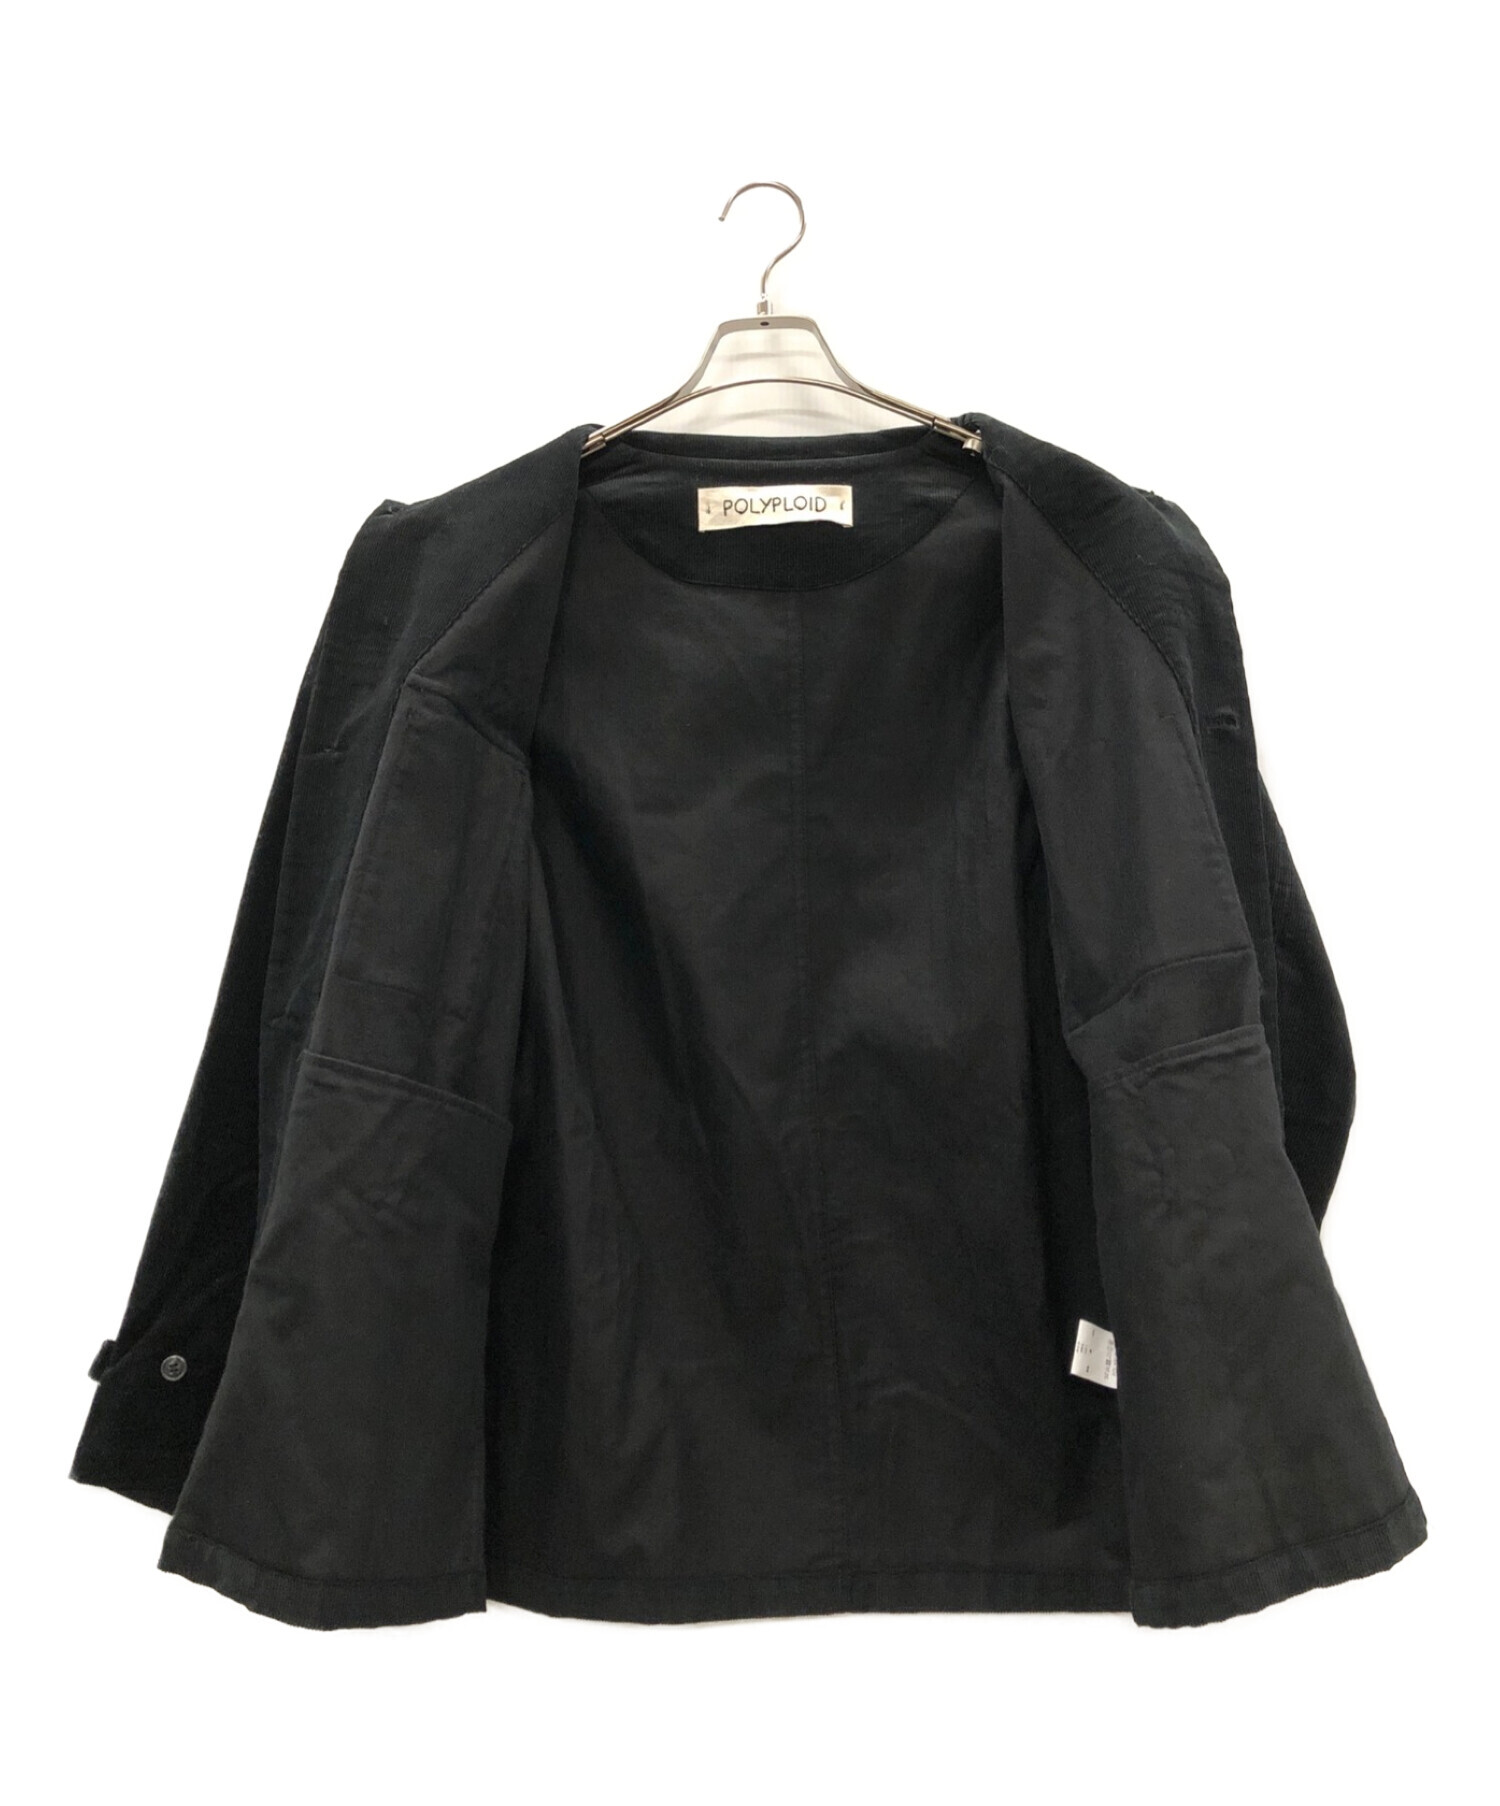 高評価なギフト POLYPLOID[ポリプロイド] Workwear Jacket_A シャツ 